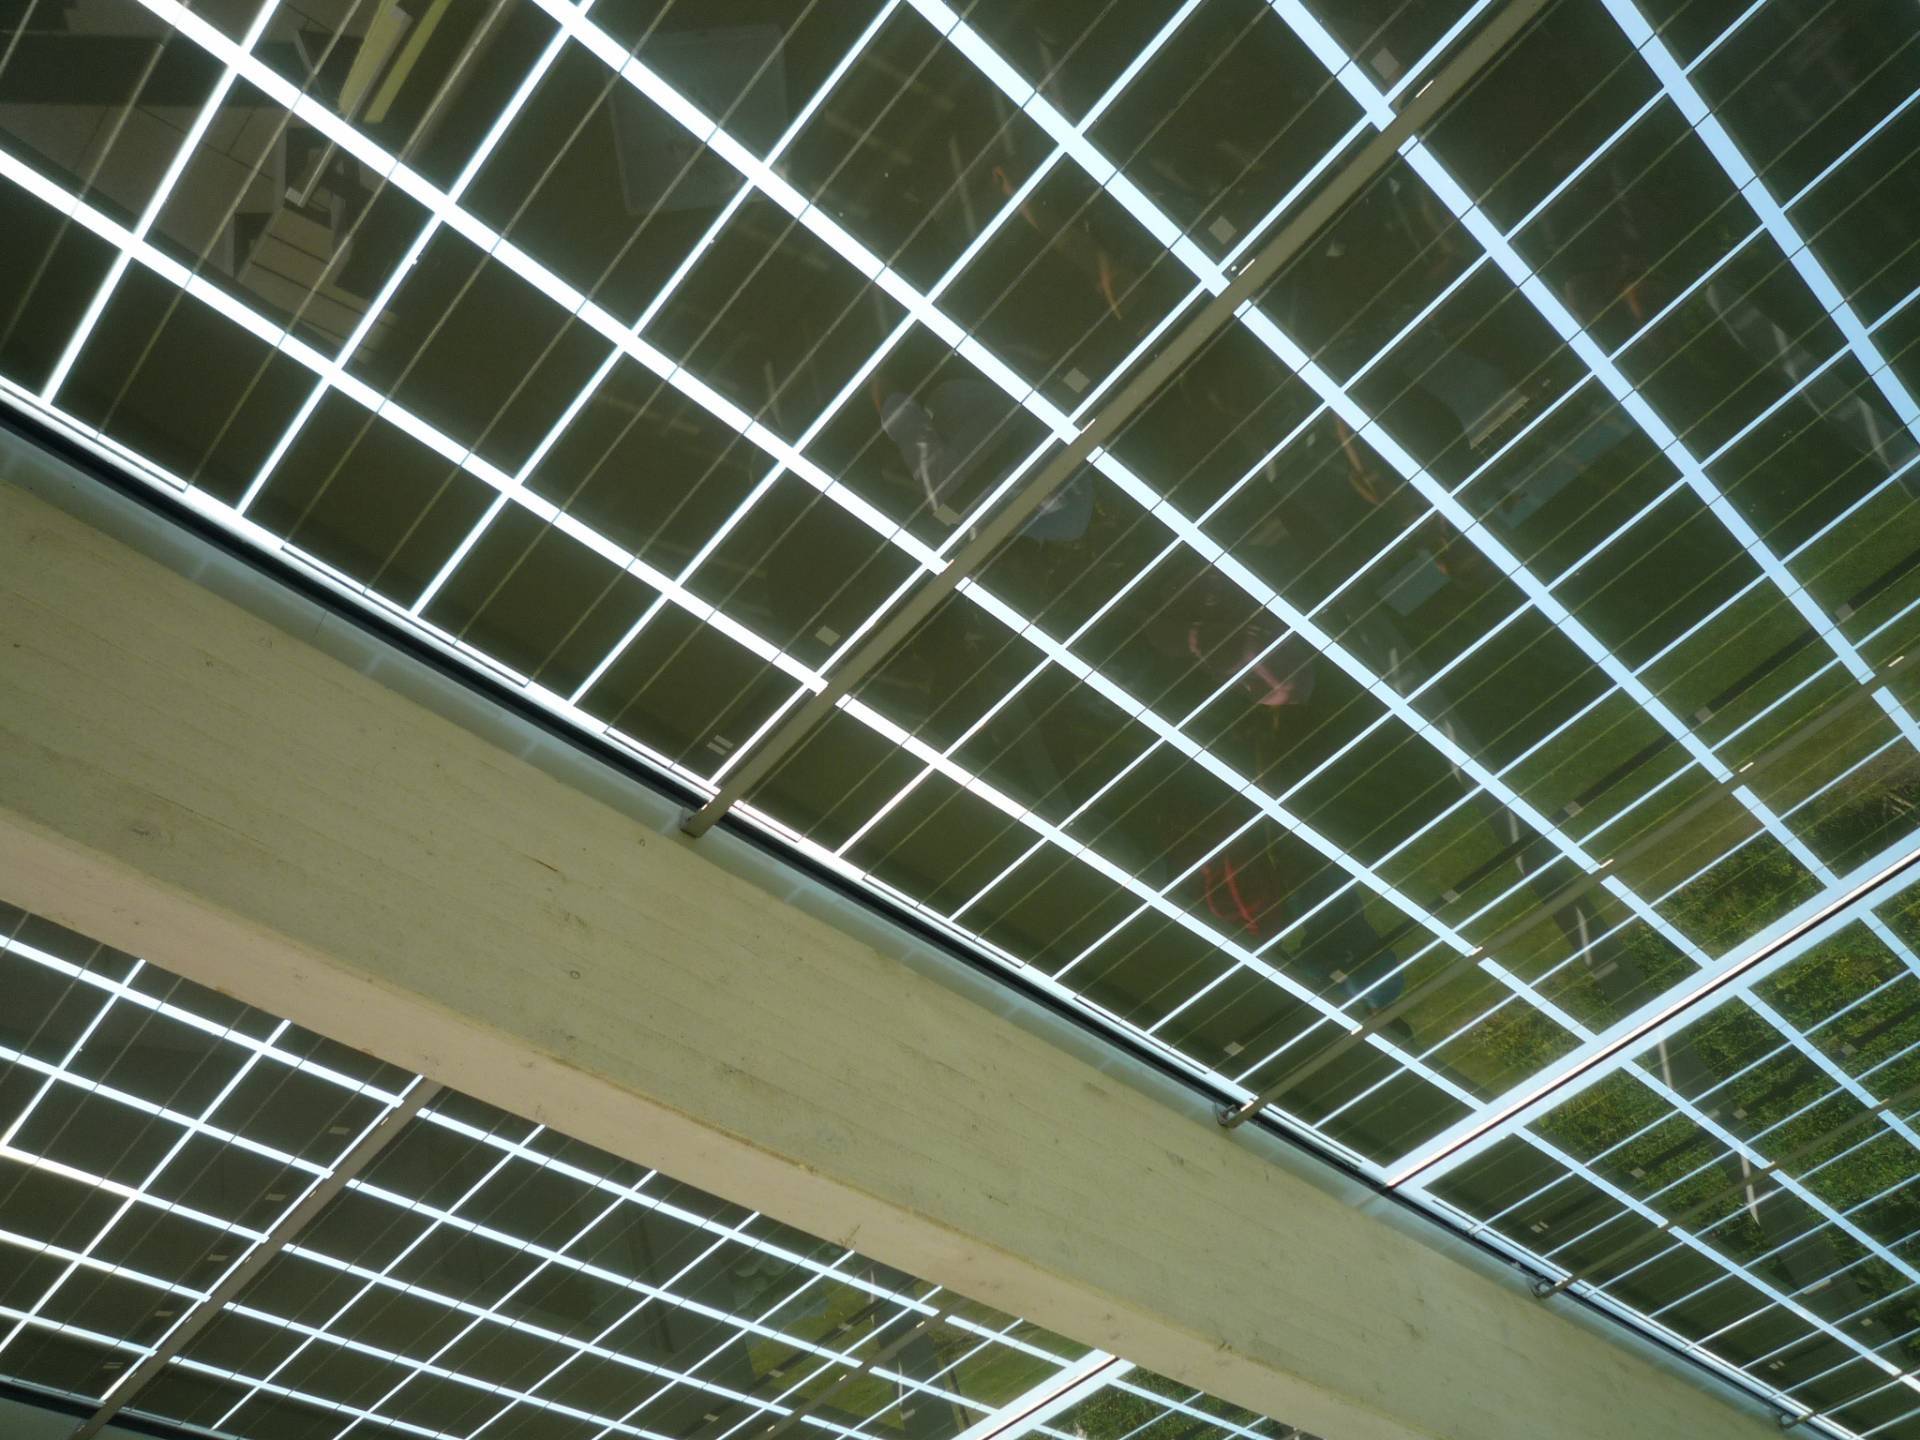 Energiegewinnung und Verschattung: Integration von Photovoltaik-Elementen in den Glas-Dachflächen des Anbaus (Foto: J. Müller)